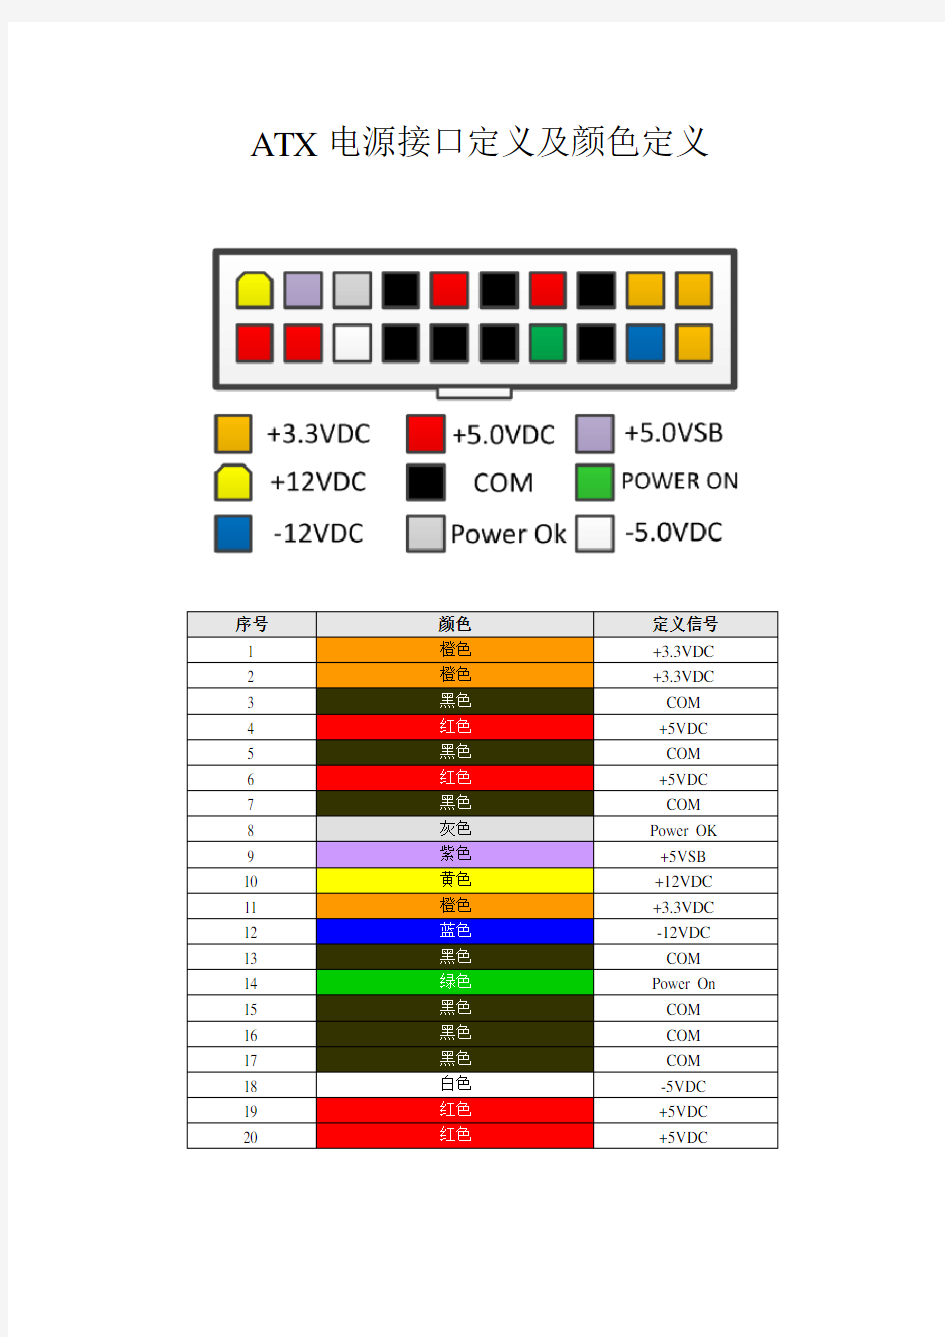 ATX电源接口定义及颜色定义